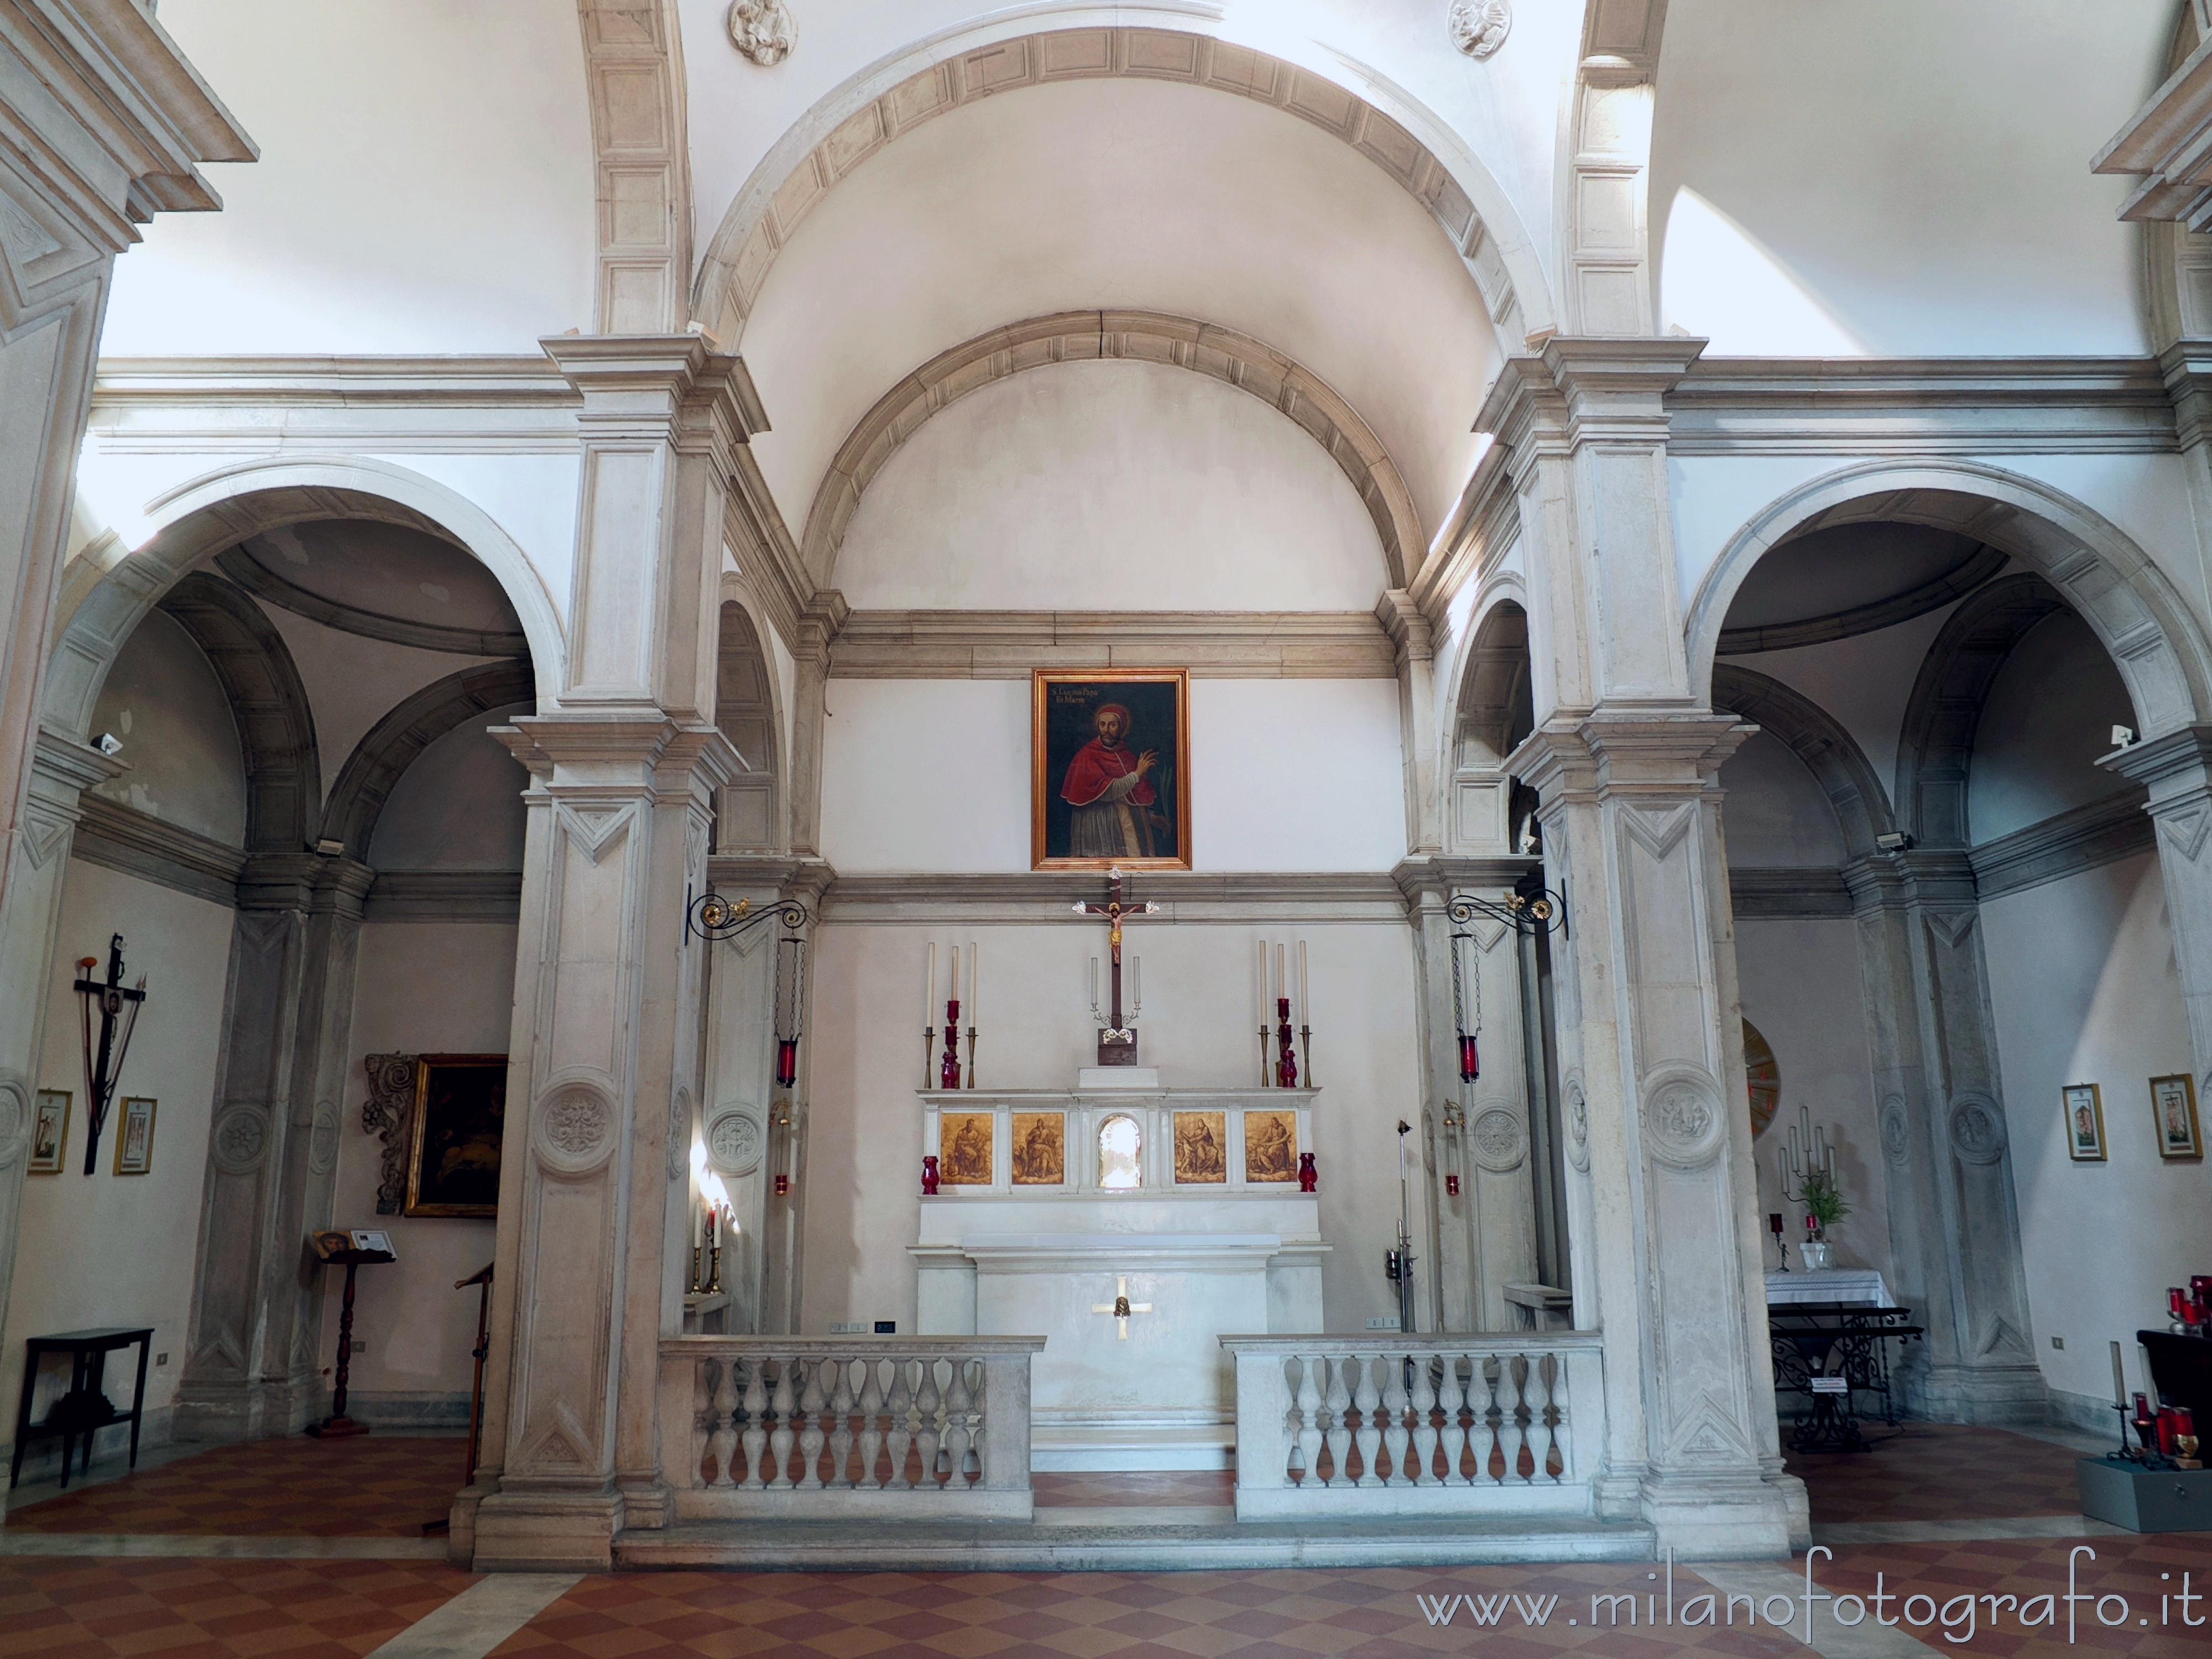 Brugherio (Monza e Brianza, Italy): Interior of the Church of San Lucio in Moncucco - Brugherio (Monza e Brianza, Italy)